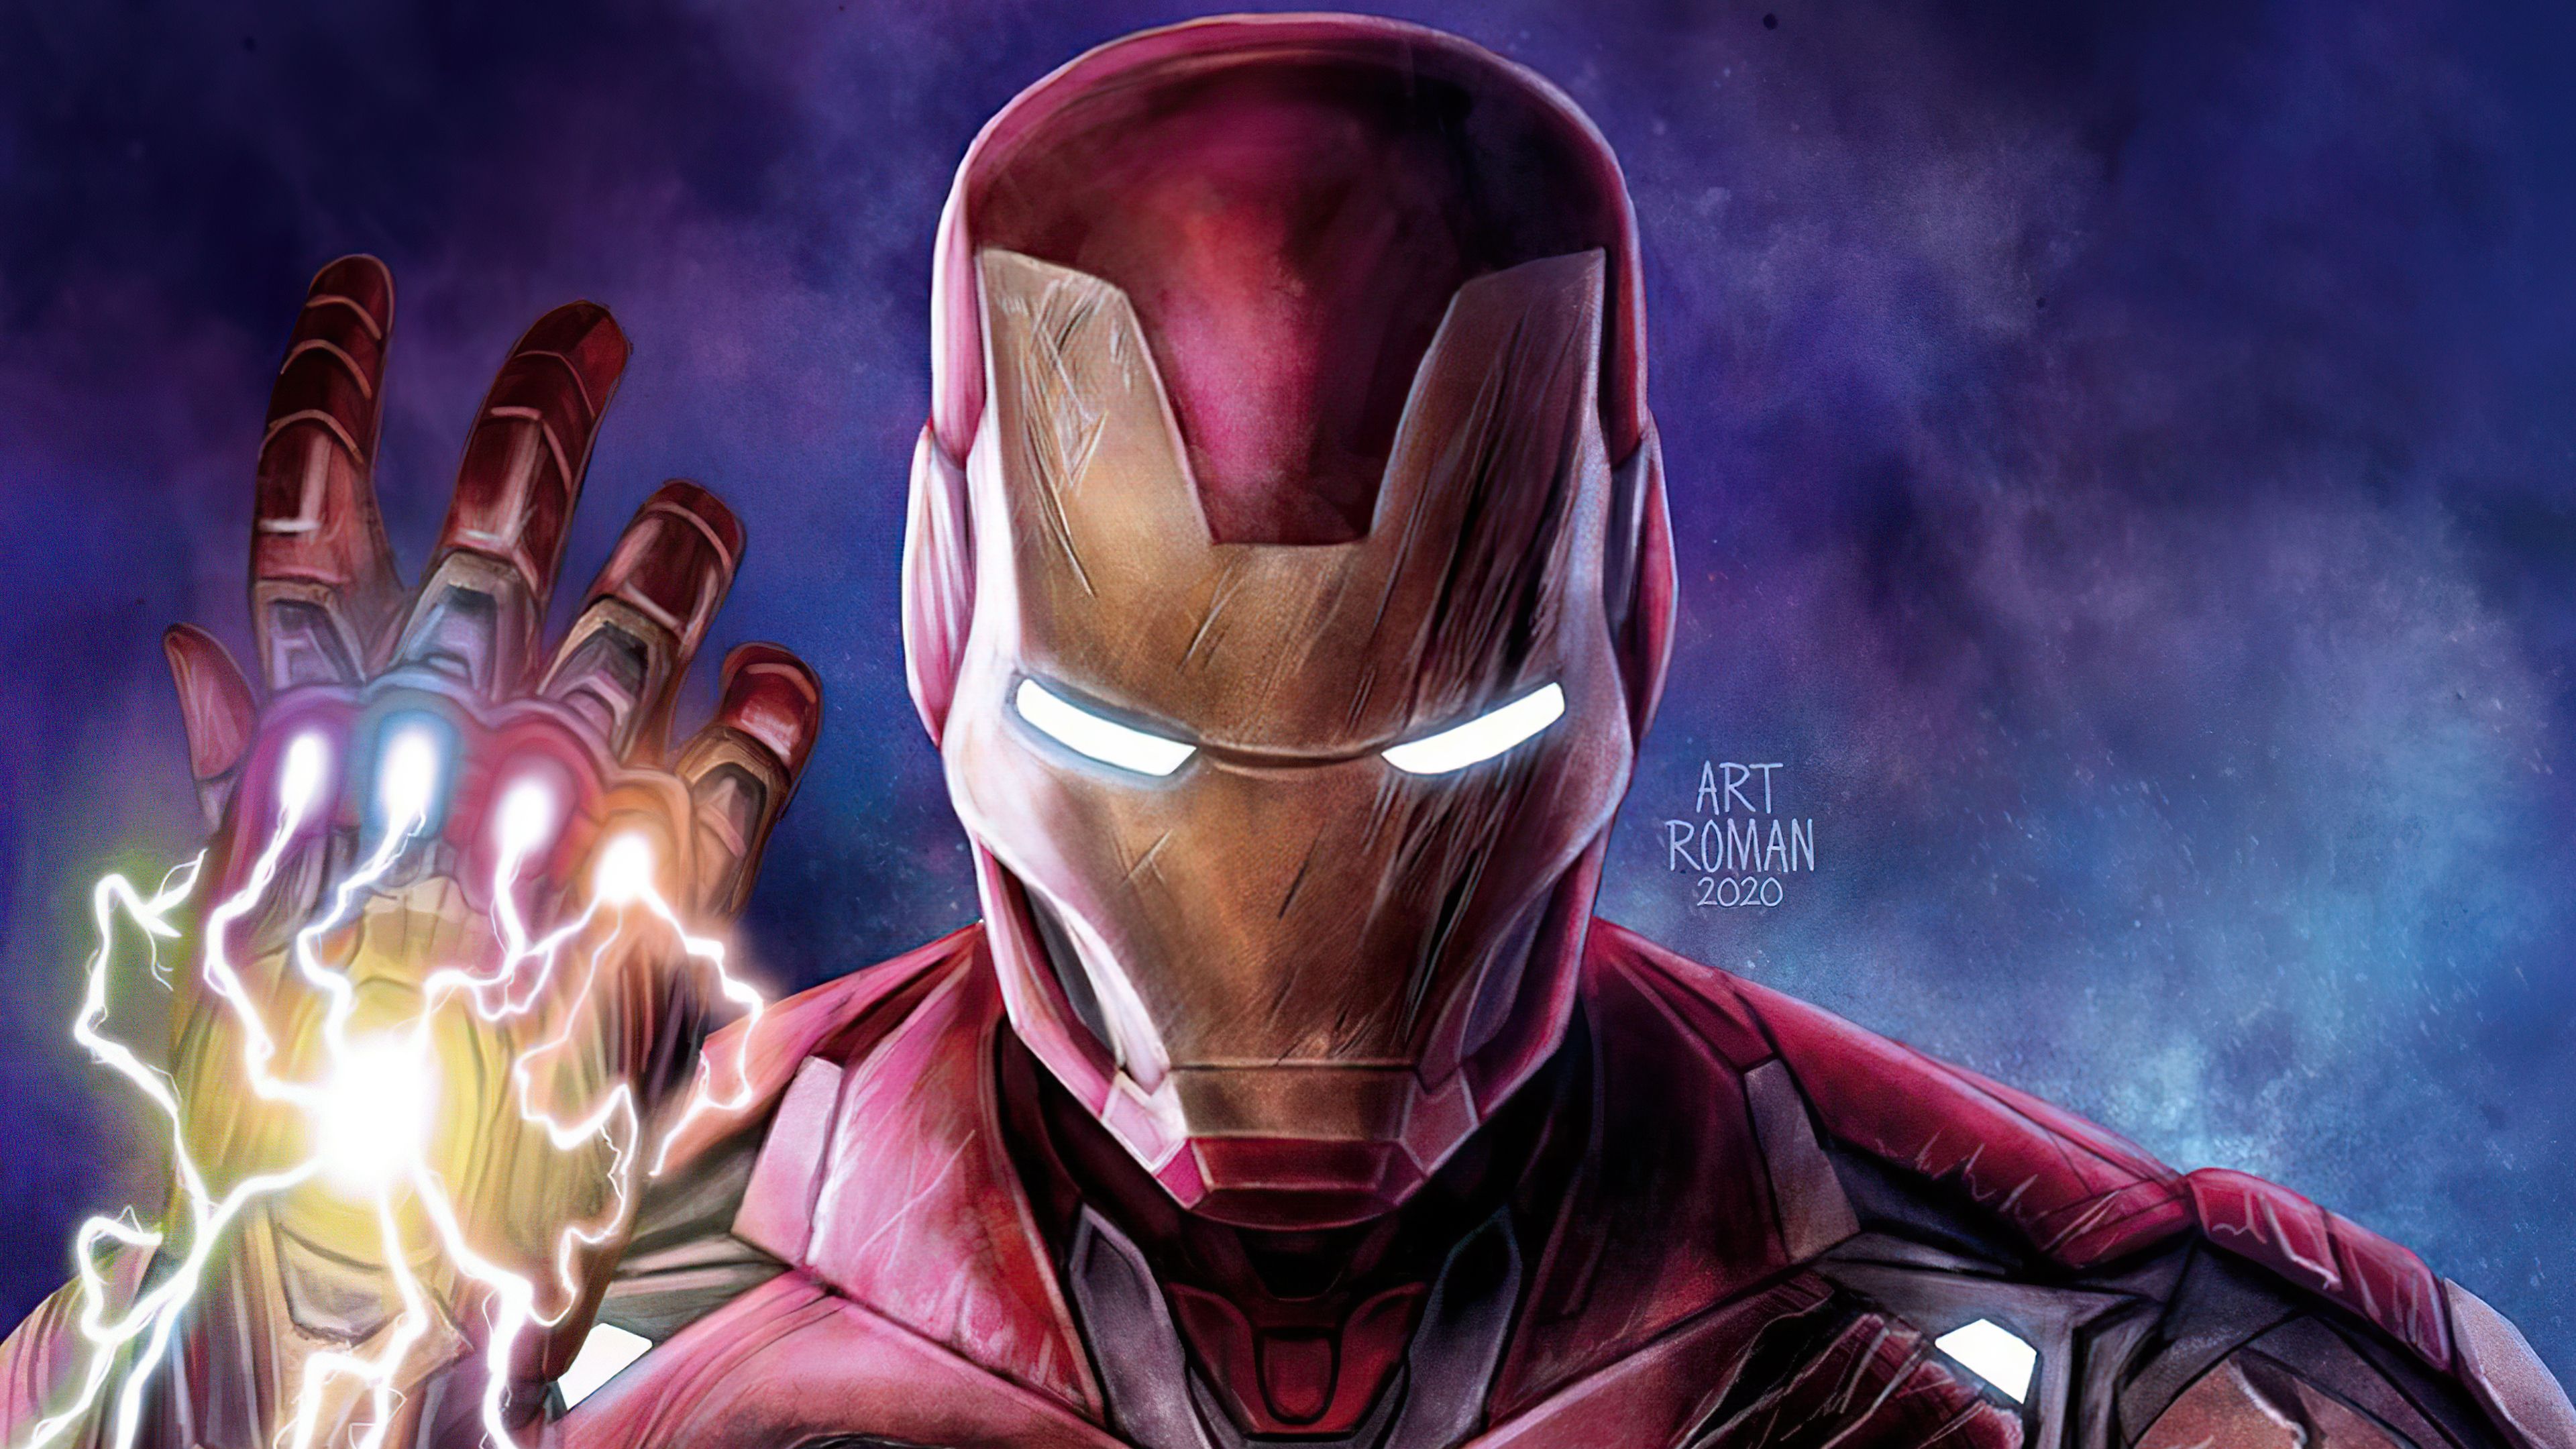 Iron Man Gauntlet 4k Iron Man Gauntlet 4k wallpaper. Iron man, Superhero wallpaper, Iron man art